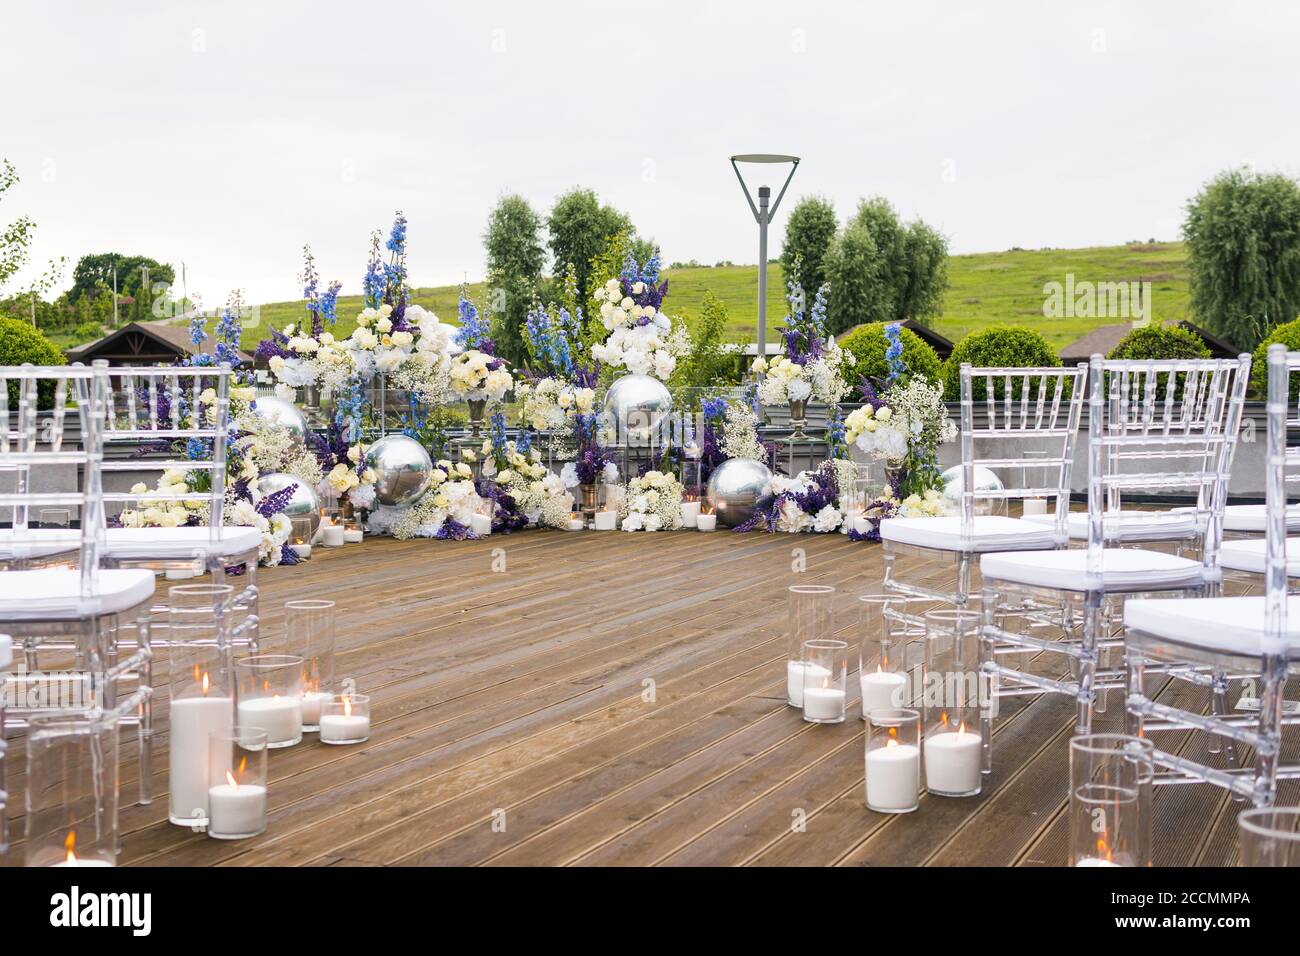 Réception de mariage avec fleurs blanches, blu et violettes et bougies, à l'extérieur. Élégante décoration de mariage de luxe sur le lieu de cérémonie ou photo zo Banque D'Images